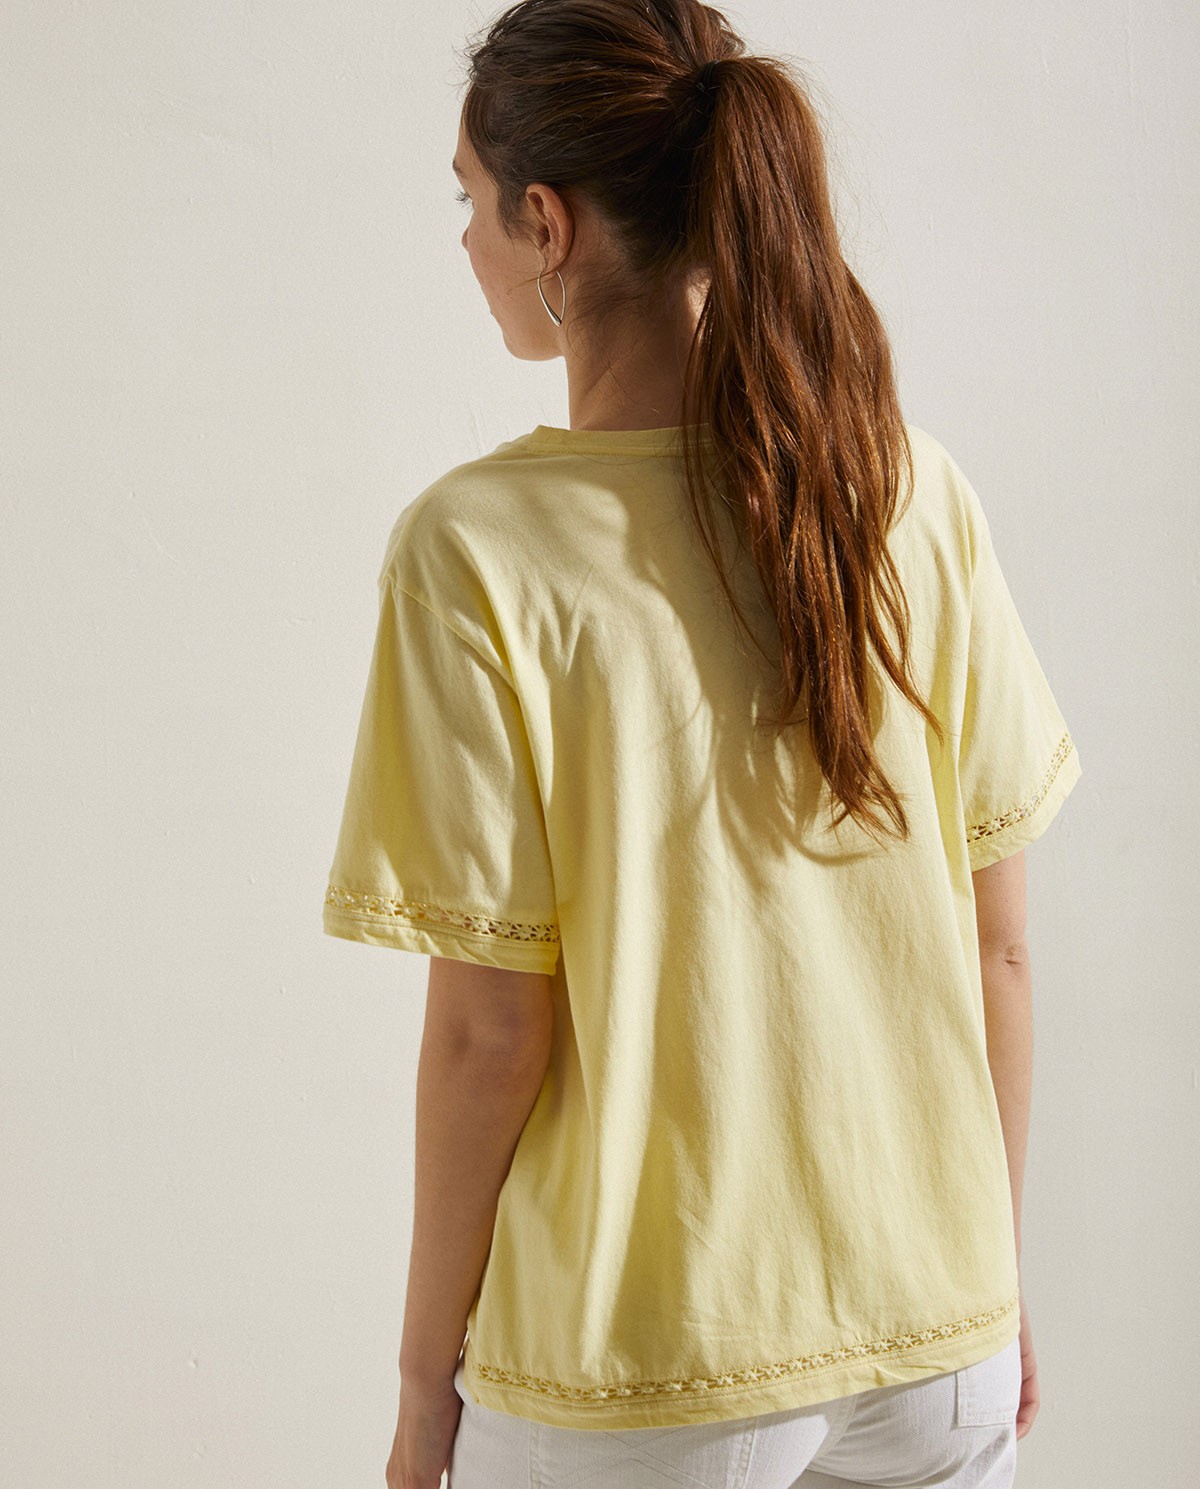 Camiseta algodón puntilla Amarillo 4